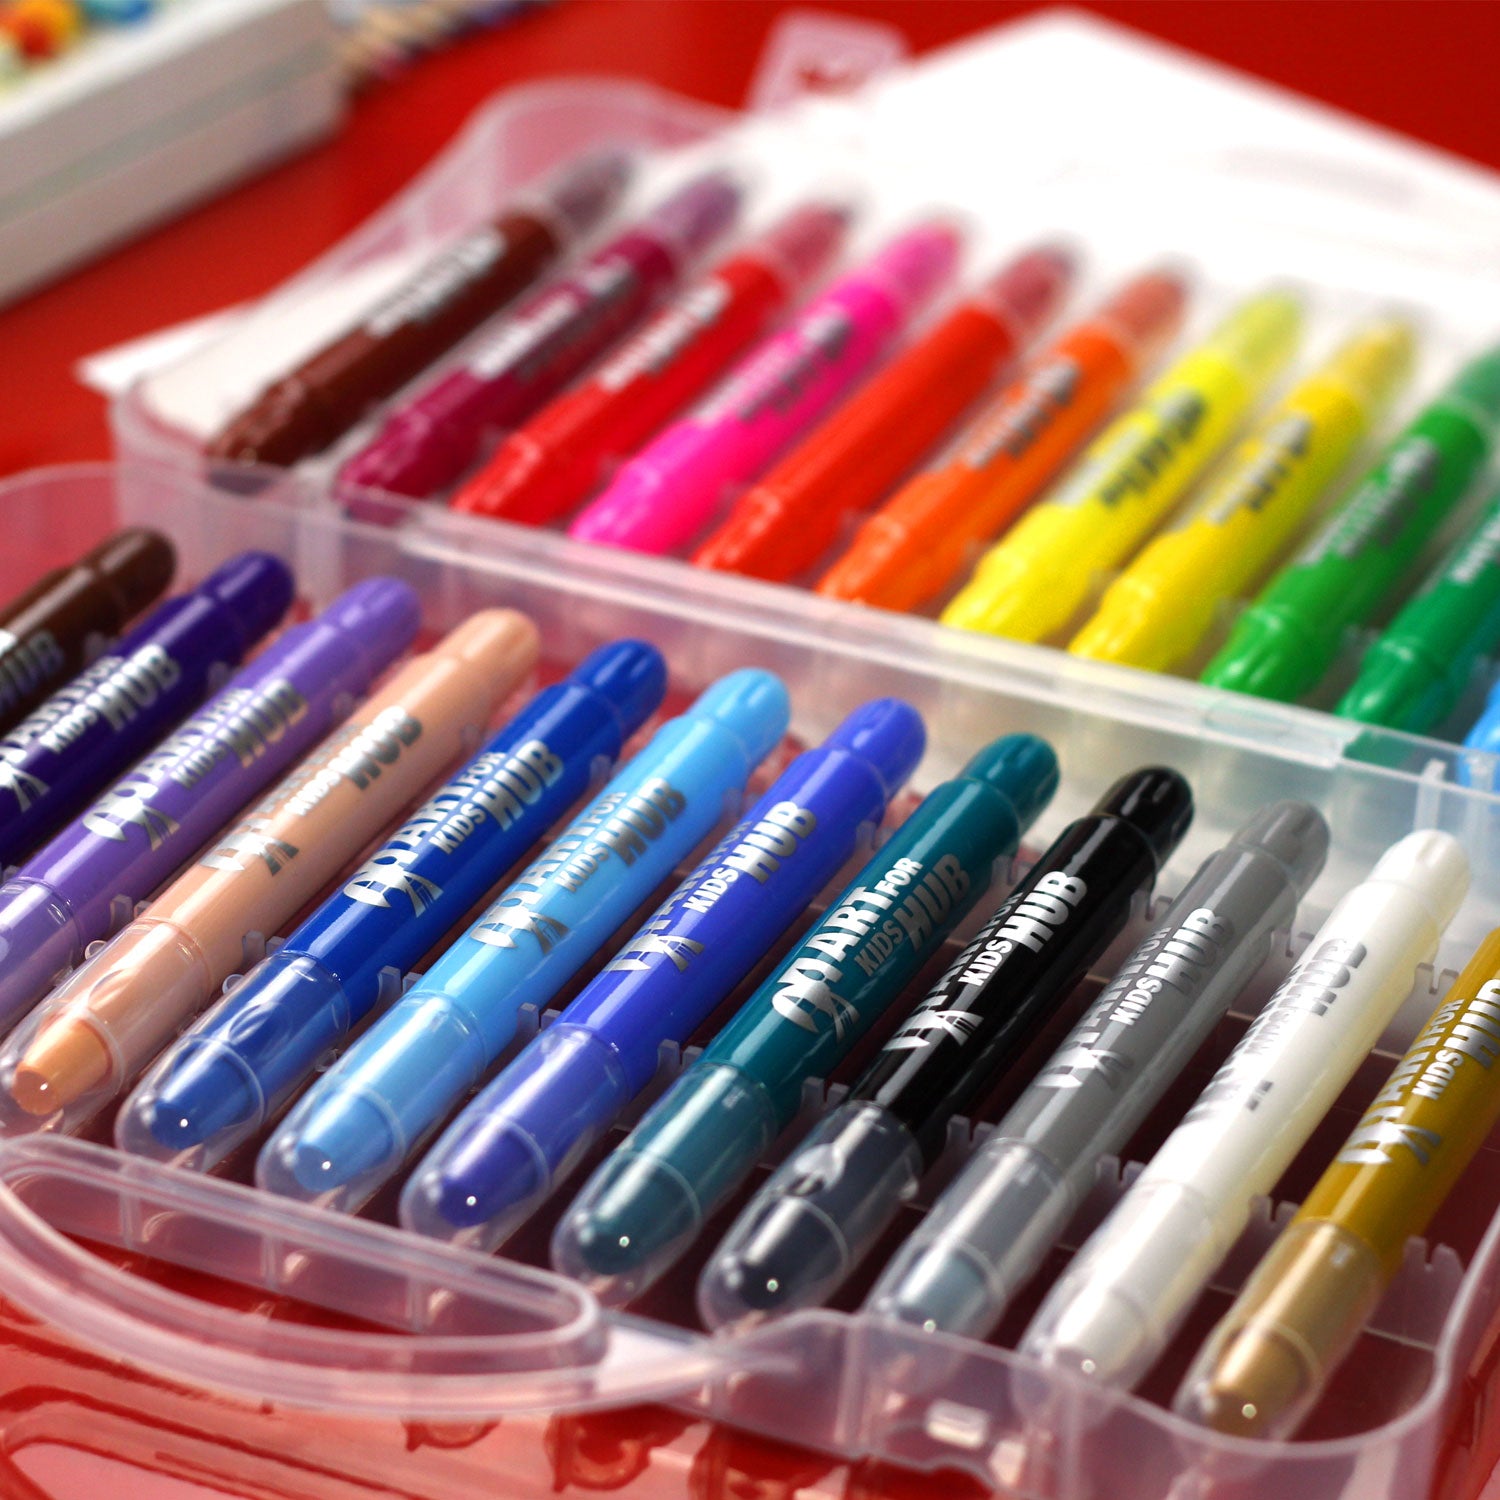 Crayola Gel Crayons – Art Therapy